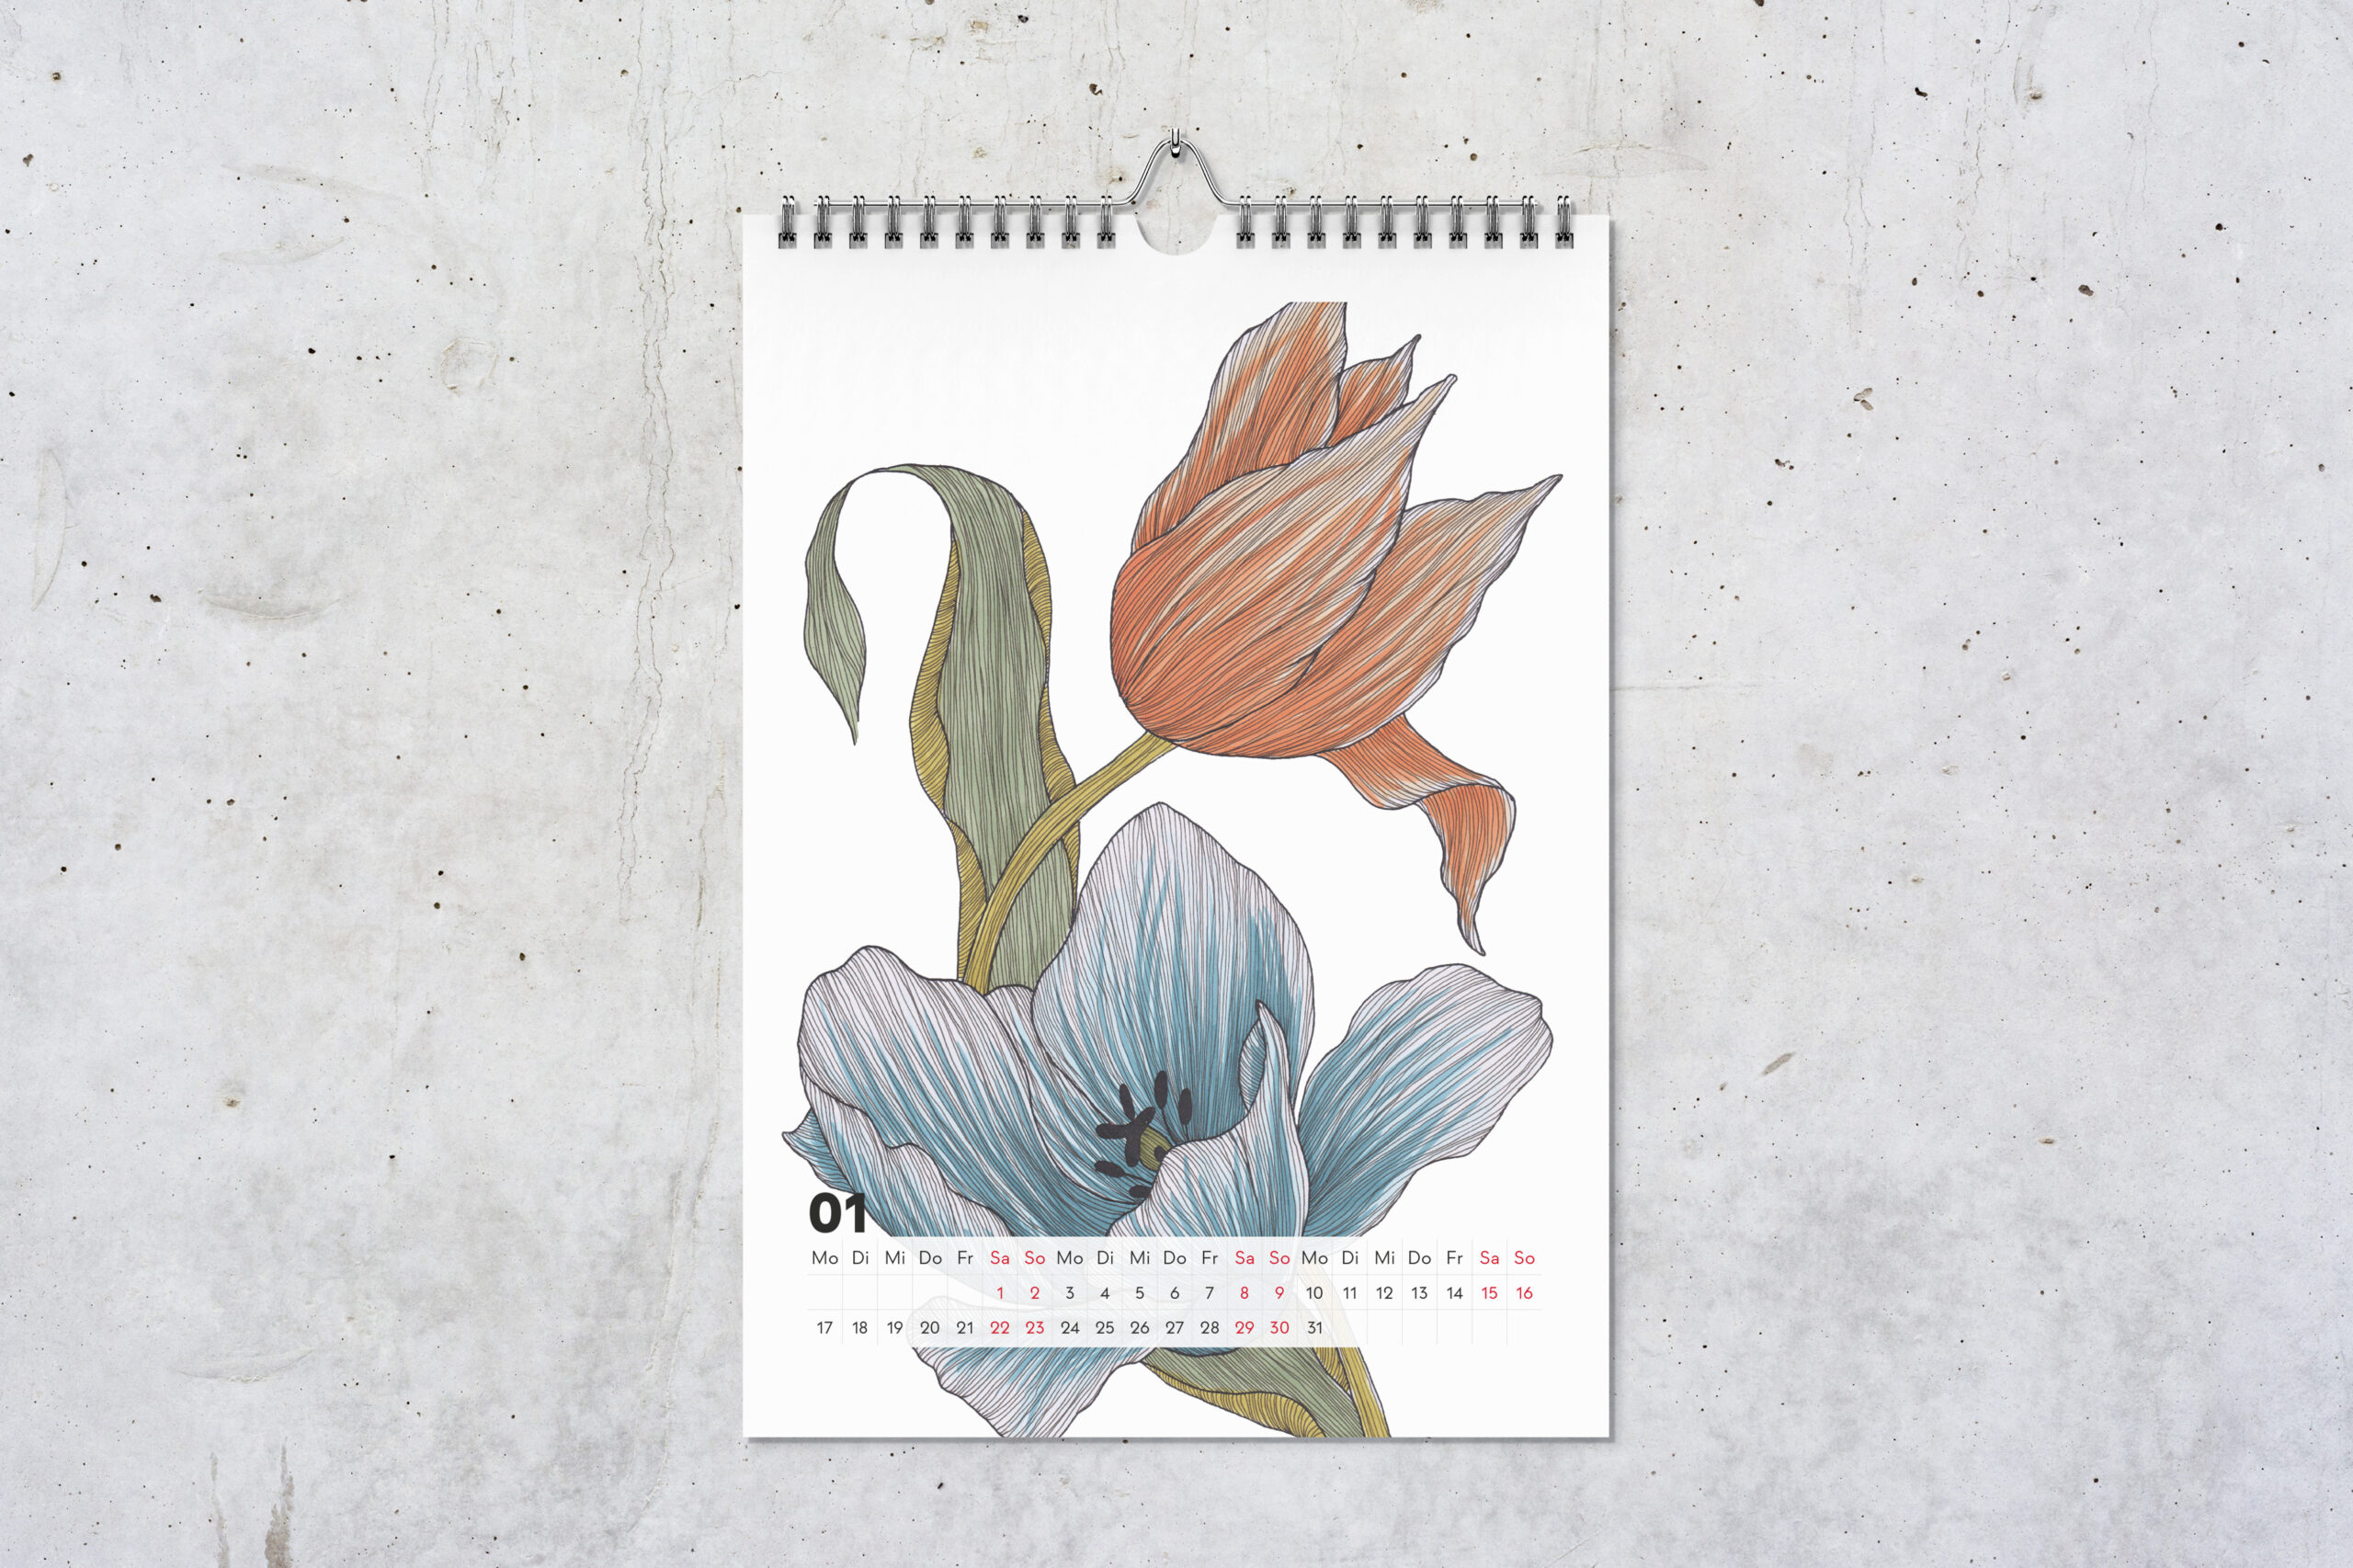 Kalenderblatt für Januar, mit Zeichnungen von einer blauen Tulpe vorne und einer orangenen Tulpe hinten.